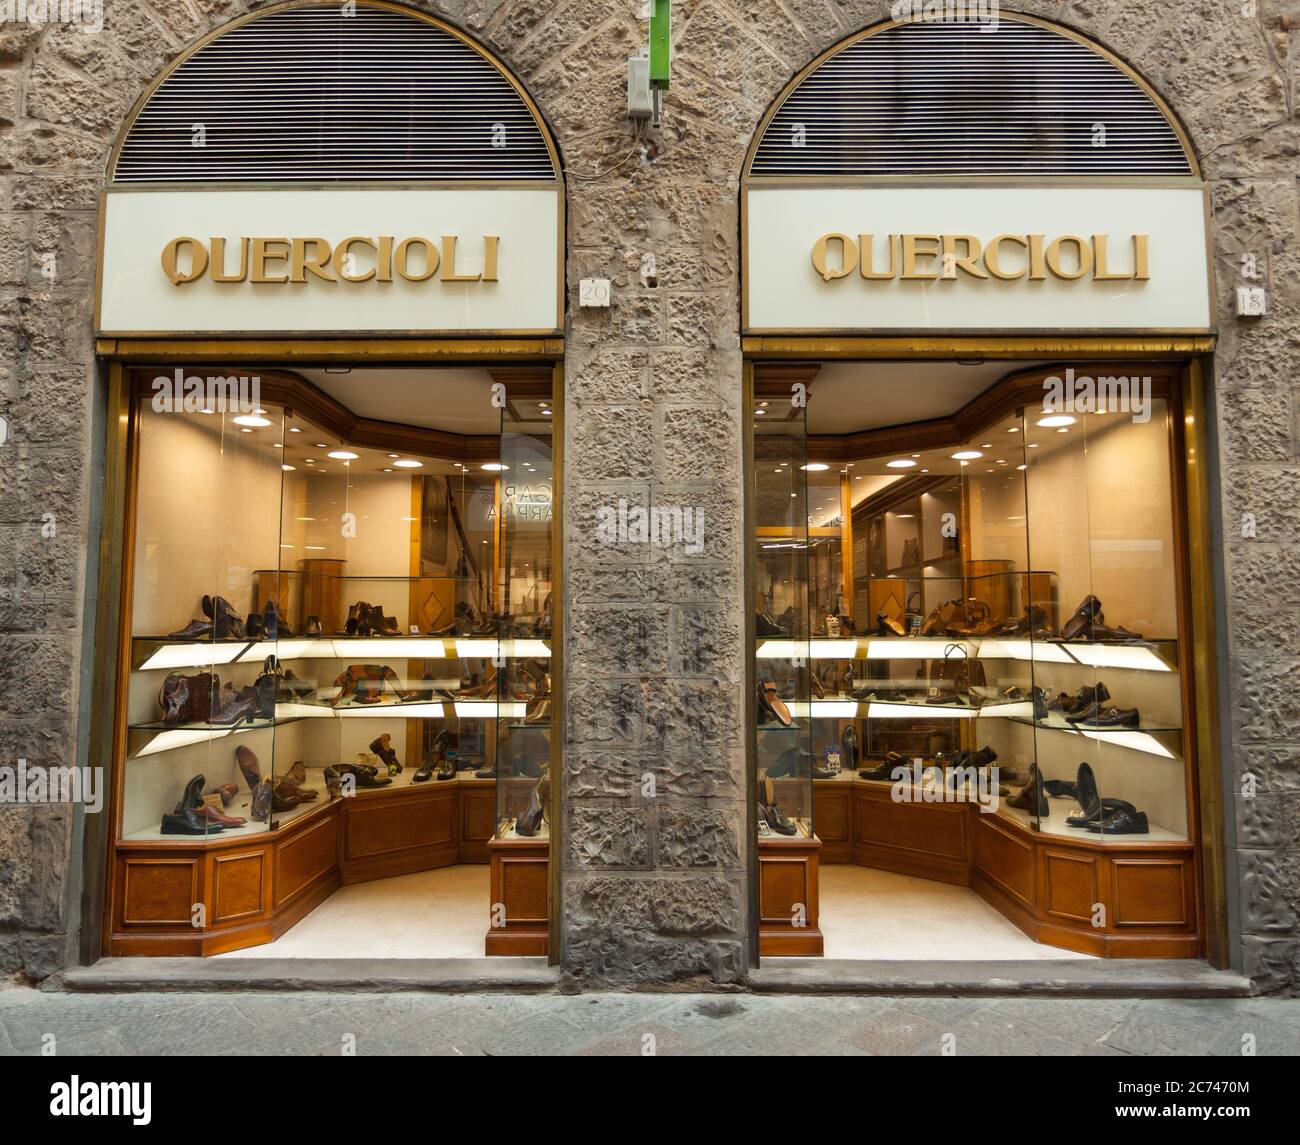 Firenze, Italia - 04 Novembre 2017: Quercioli in via calzaiuoli, negozio  specializzato in calzature artigianali. Tutte le scarpe sono fatte a mano e  in pelle Foto stock - Alamy